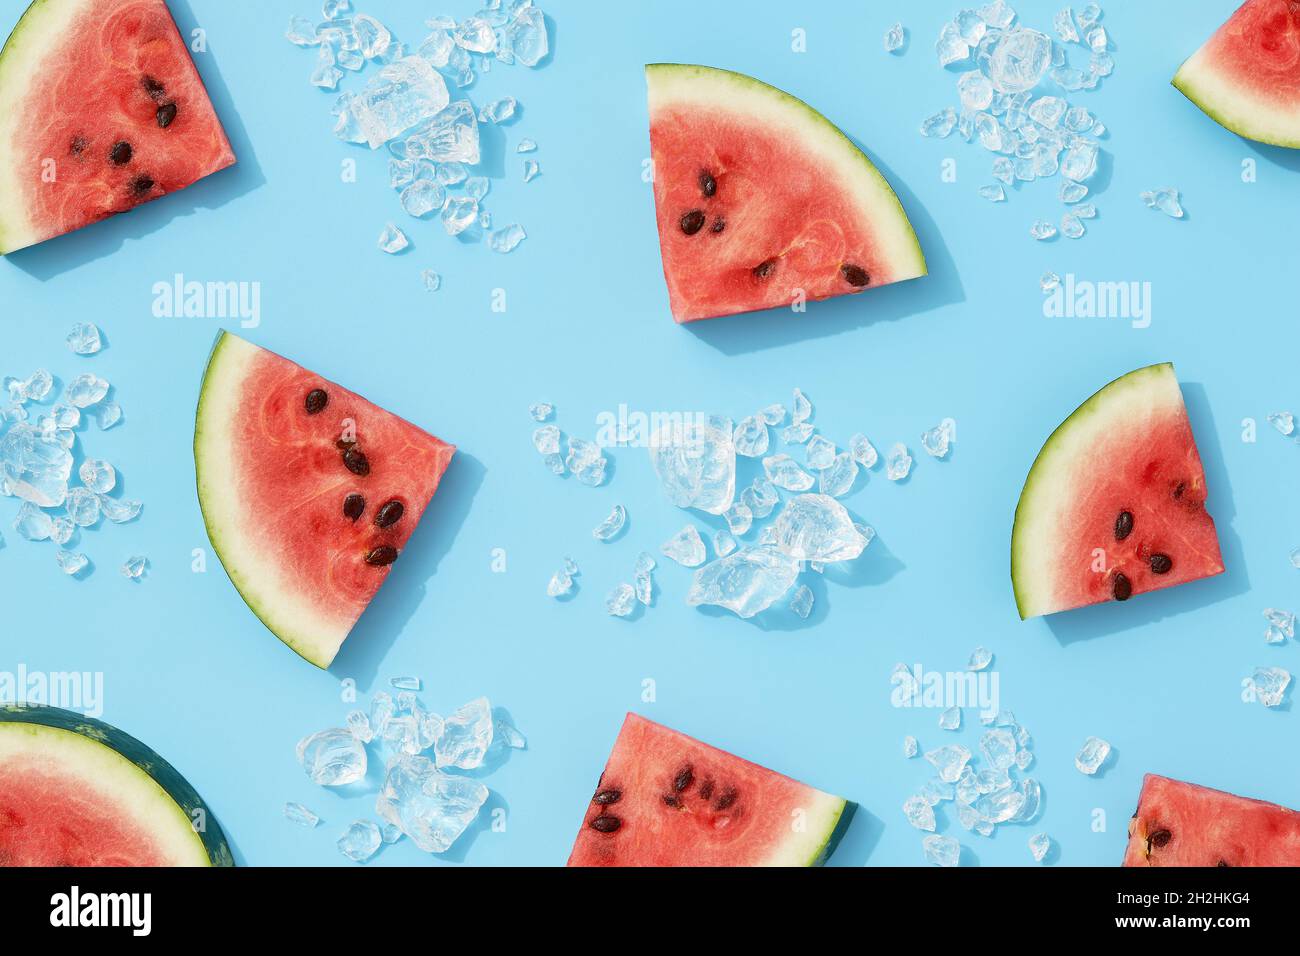 Watermelon Wallpaper HD 4K  Apps on Google Play